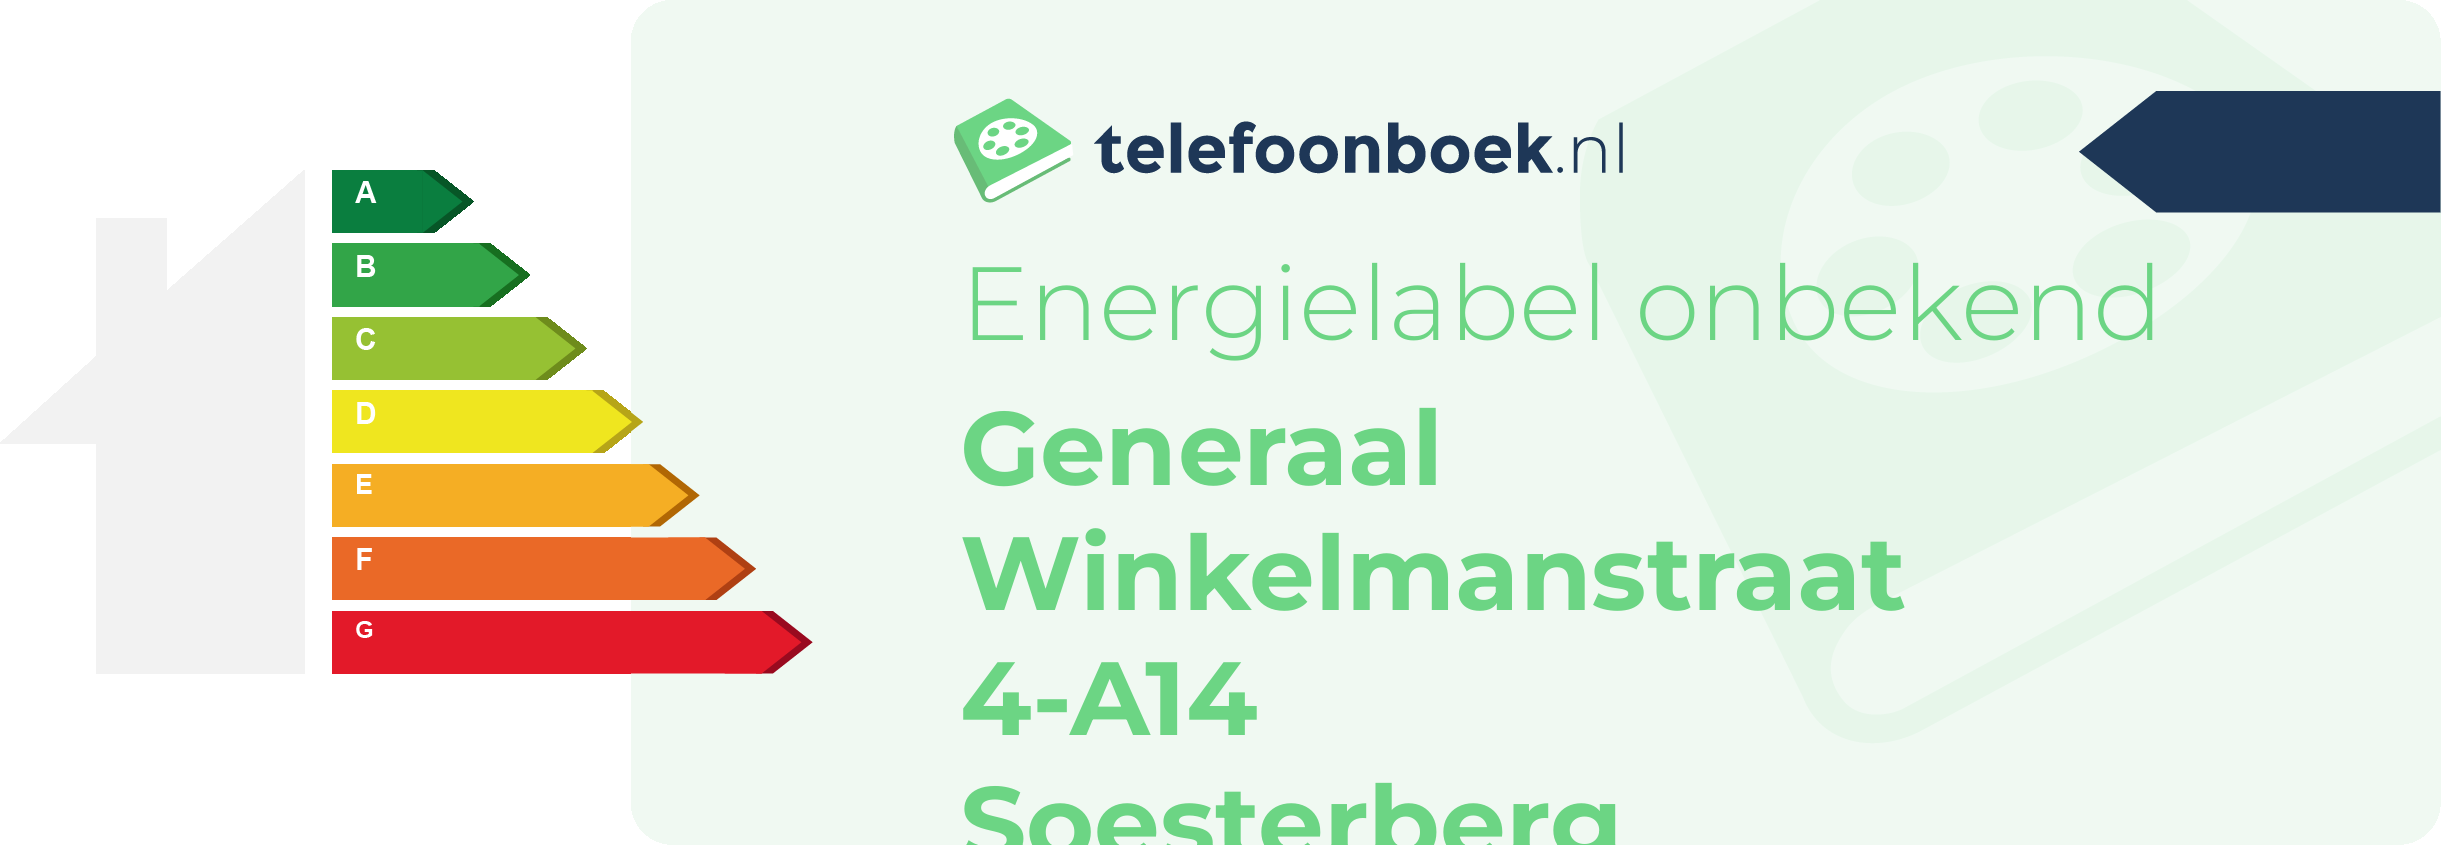 Energielabel Generaal Winkelmanstraat 4-A14 Soesterberg